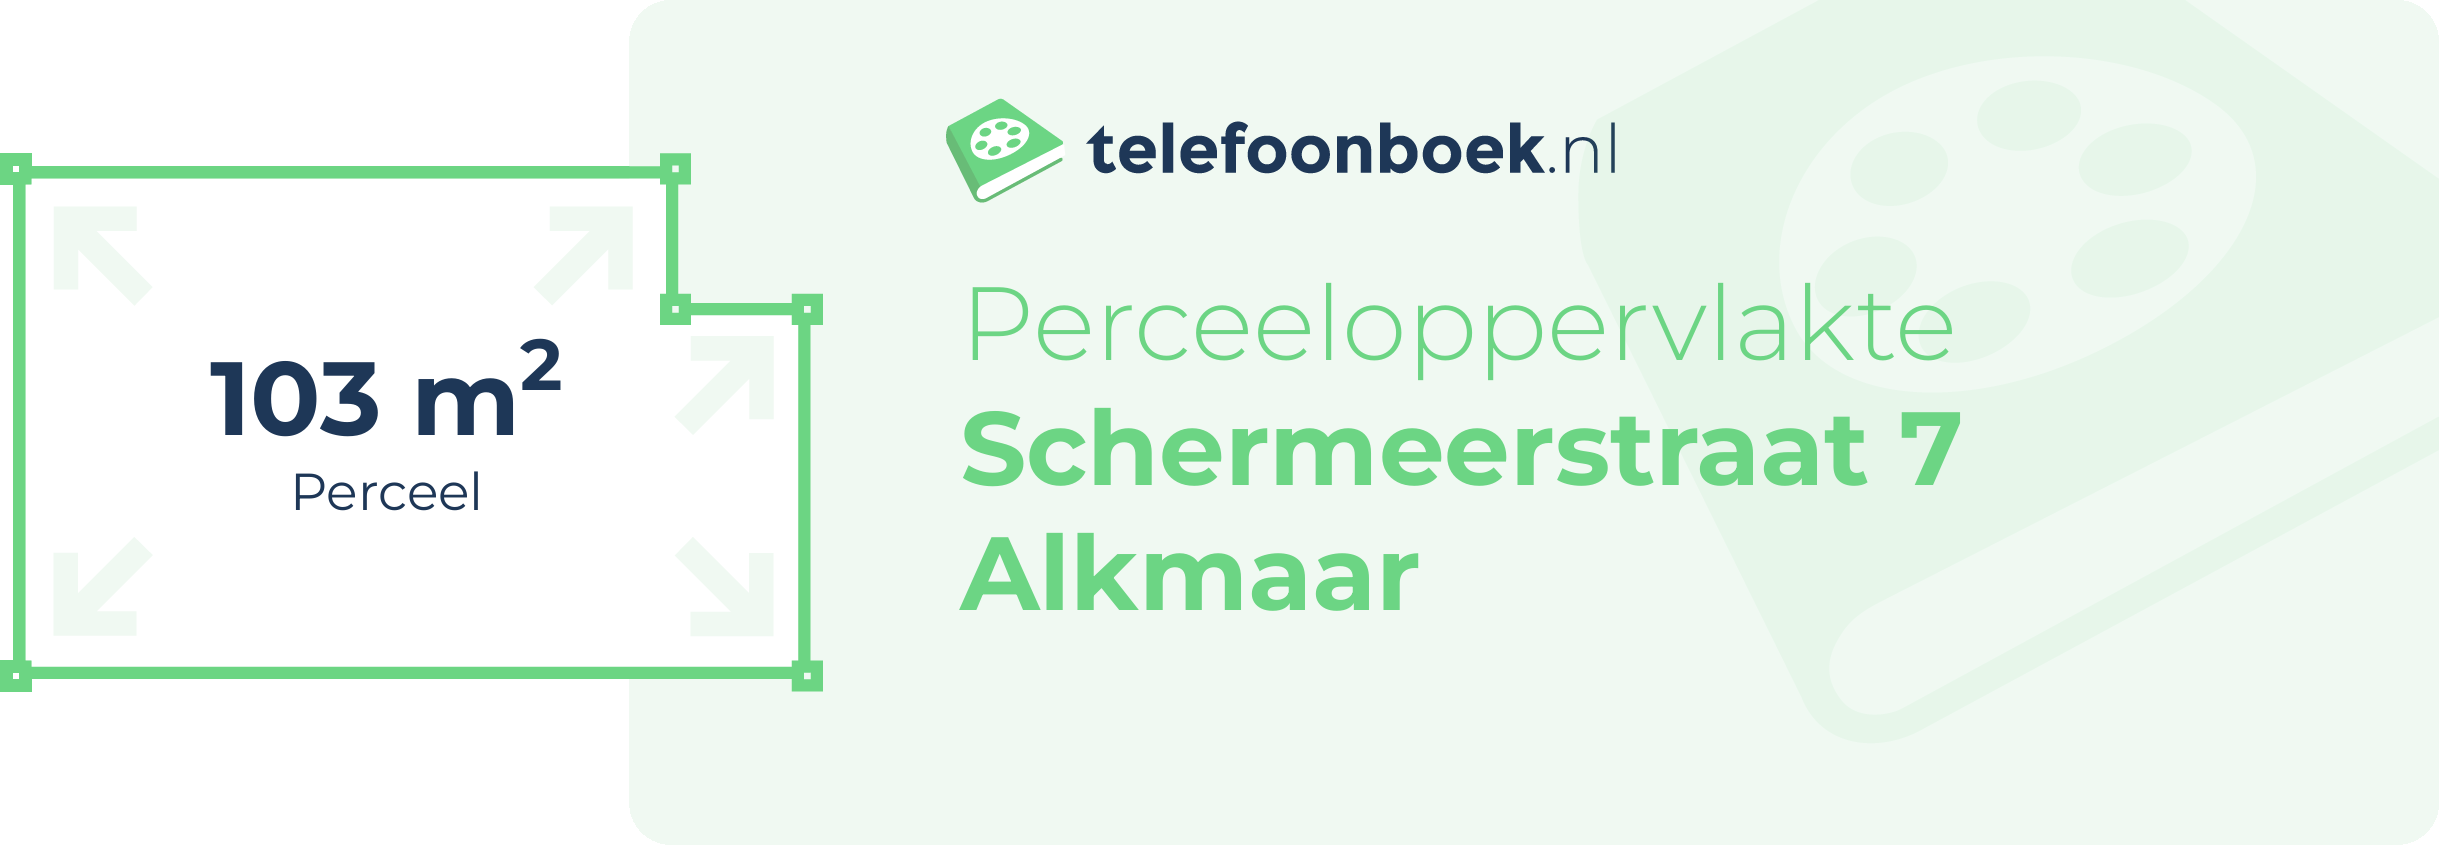 Perceeloppervlakte Schermeerstraat 7 Alkmaar